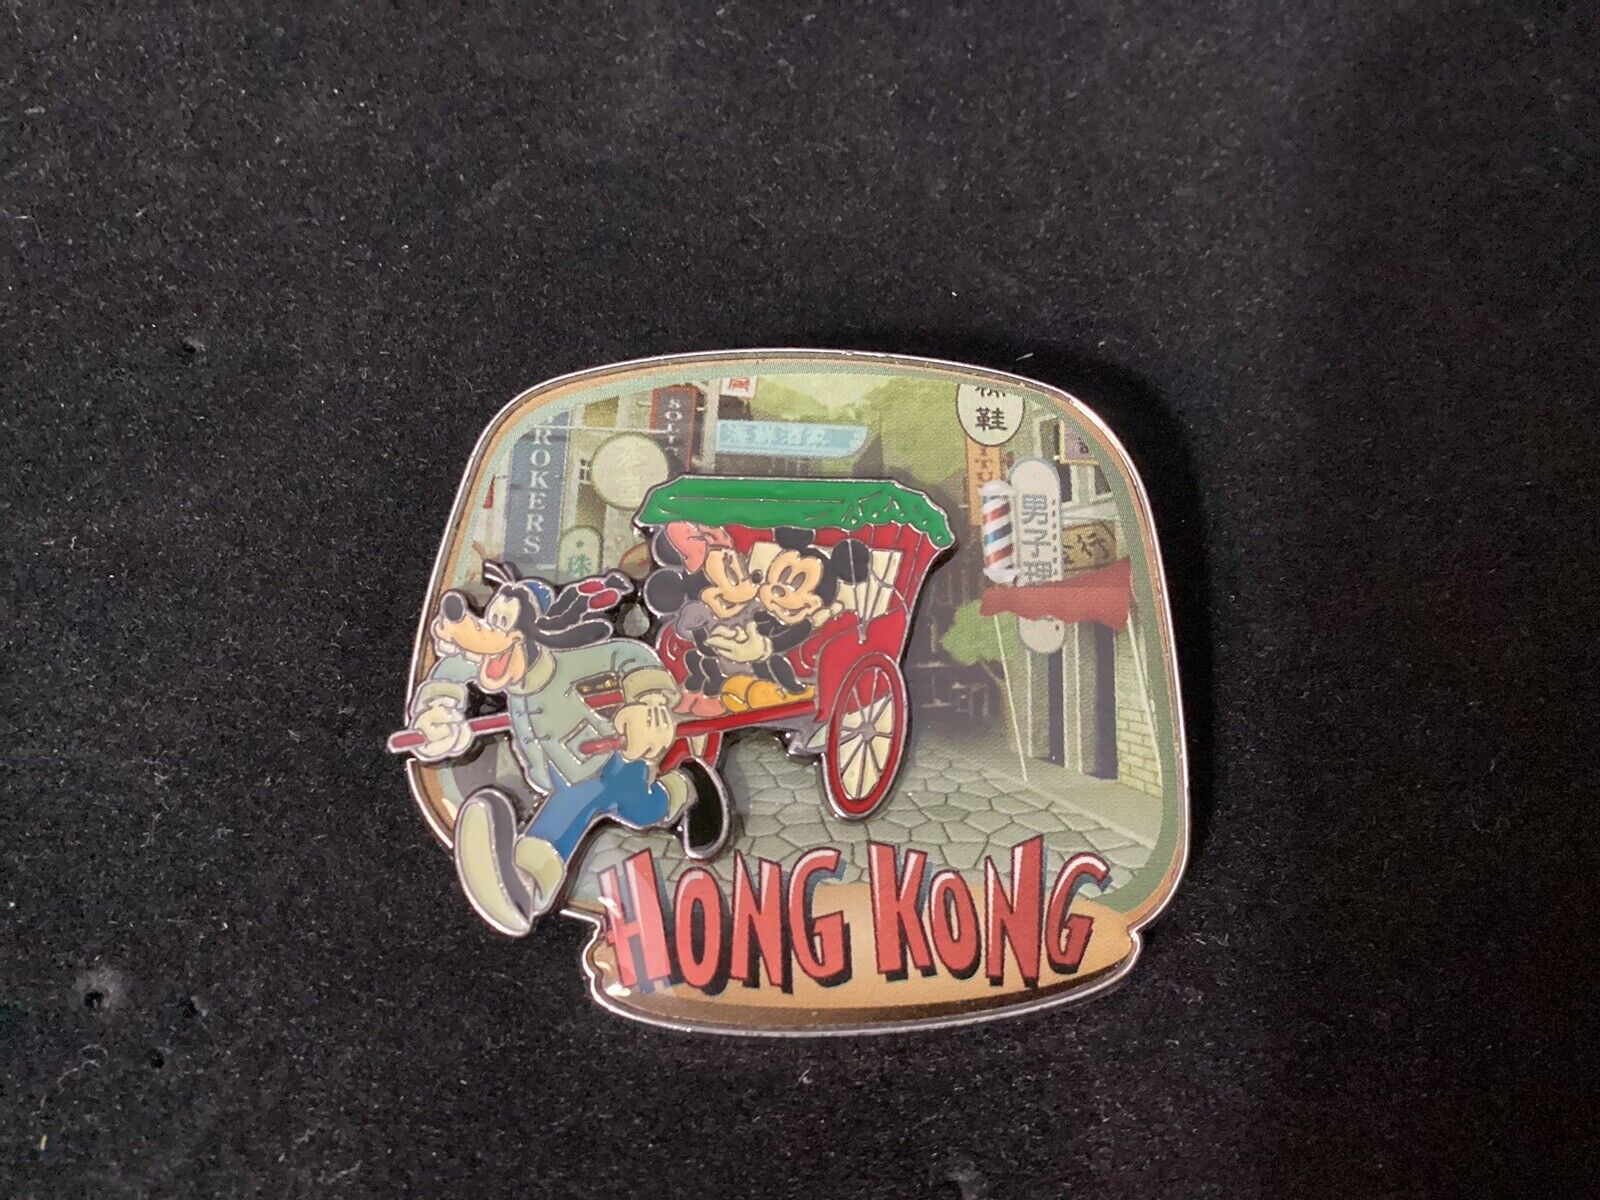 Hong Kong Disney Pin Of Rickshaw With Goofy, Mickey & Minnie